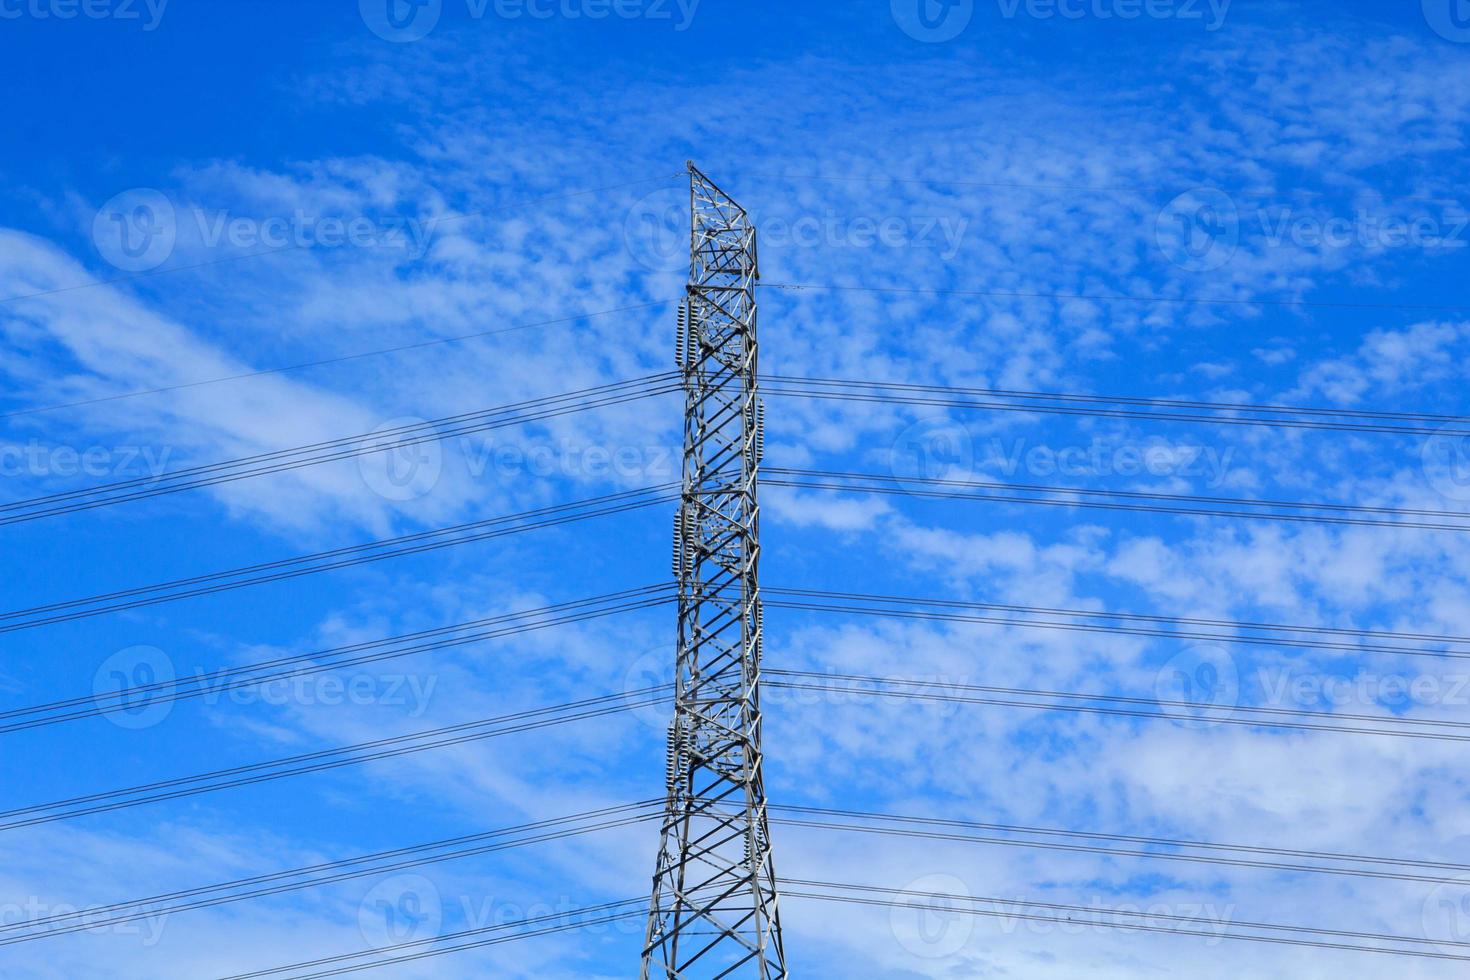 los postes de alto voltaje diseñados por ingenieros para plantas industriales y energía doméstica de consumo en un fondo de cielo azul y cálido es tecnología moderna e industrial moderna y peligrosa, por favor no se acerque. foto